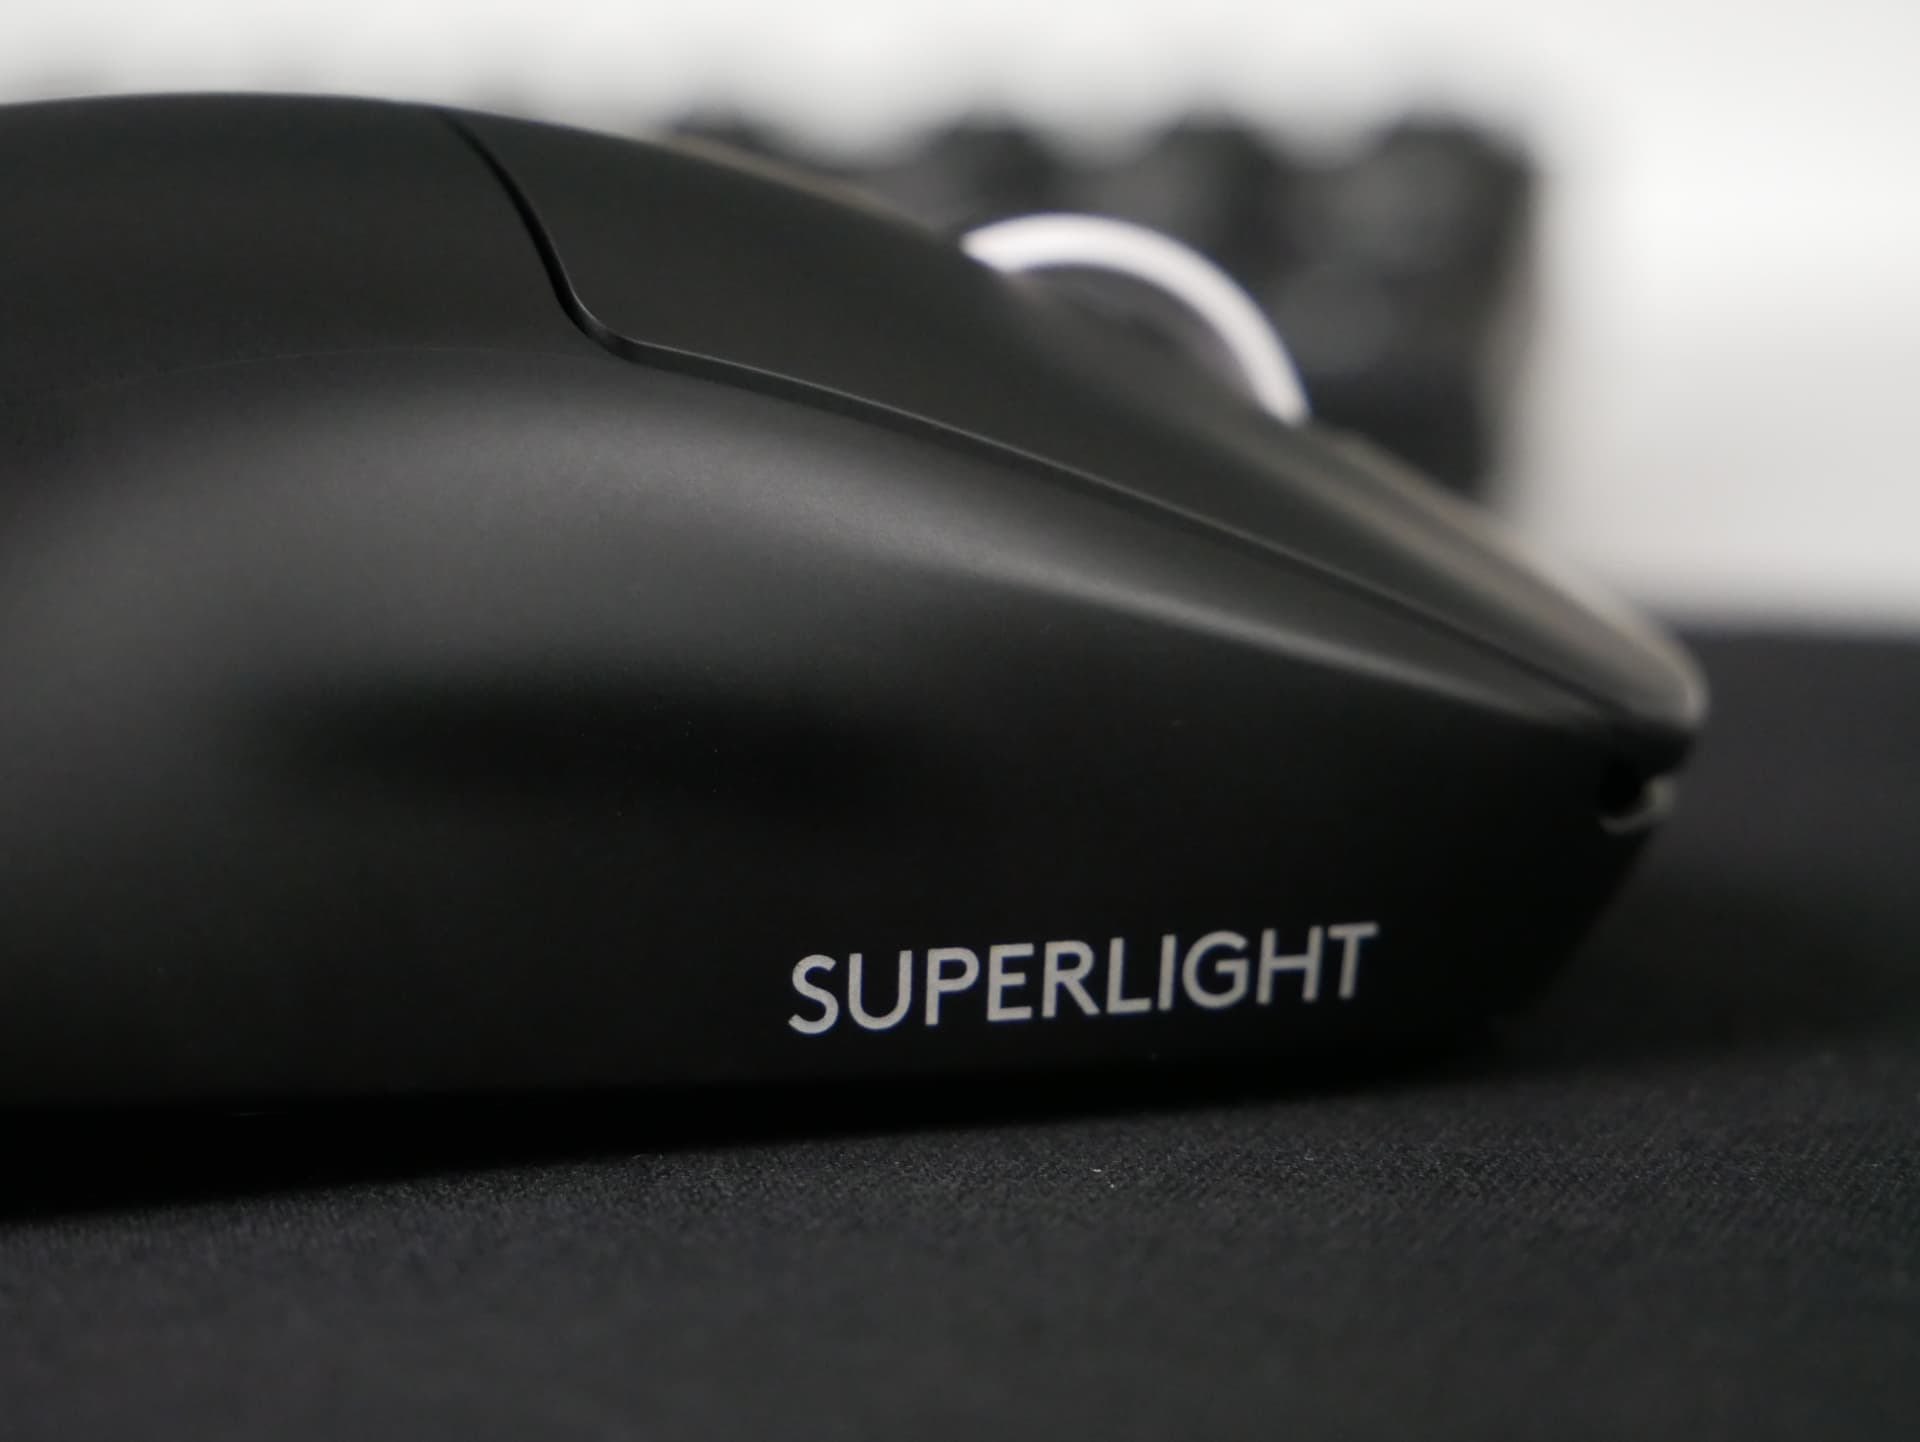 「Logicool G Pro X Superlight」レビュー。シンプルな形状の最軽量ワイヤレスマウス | DPQP